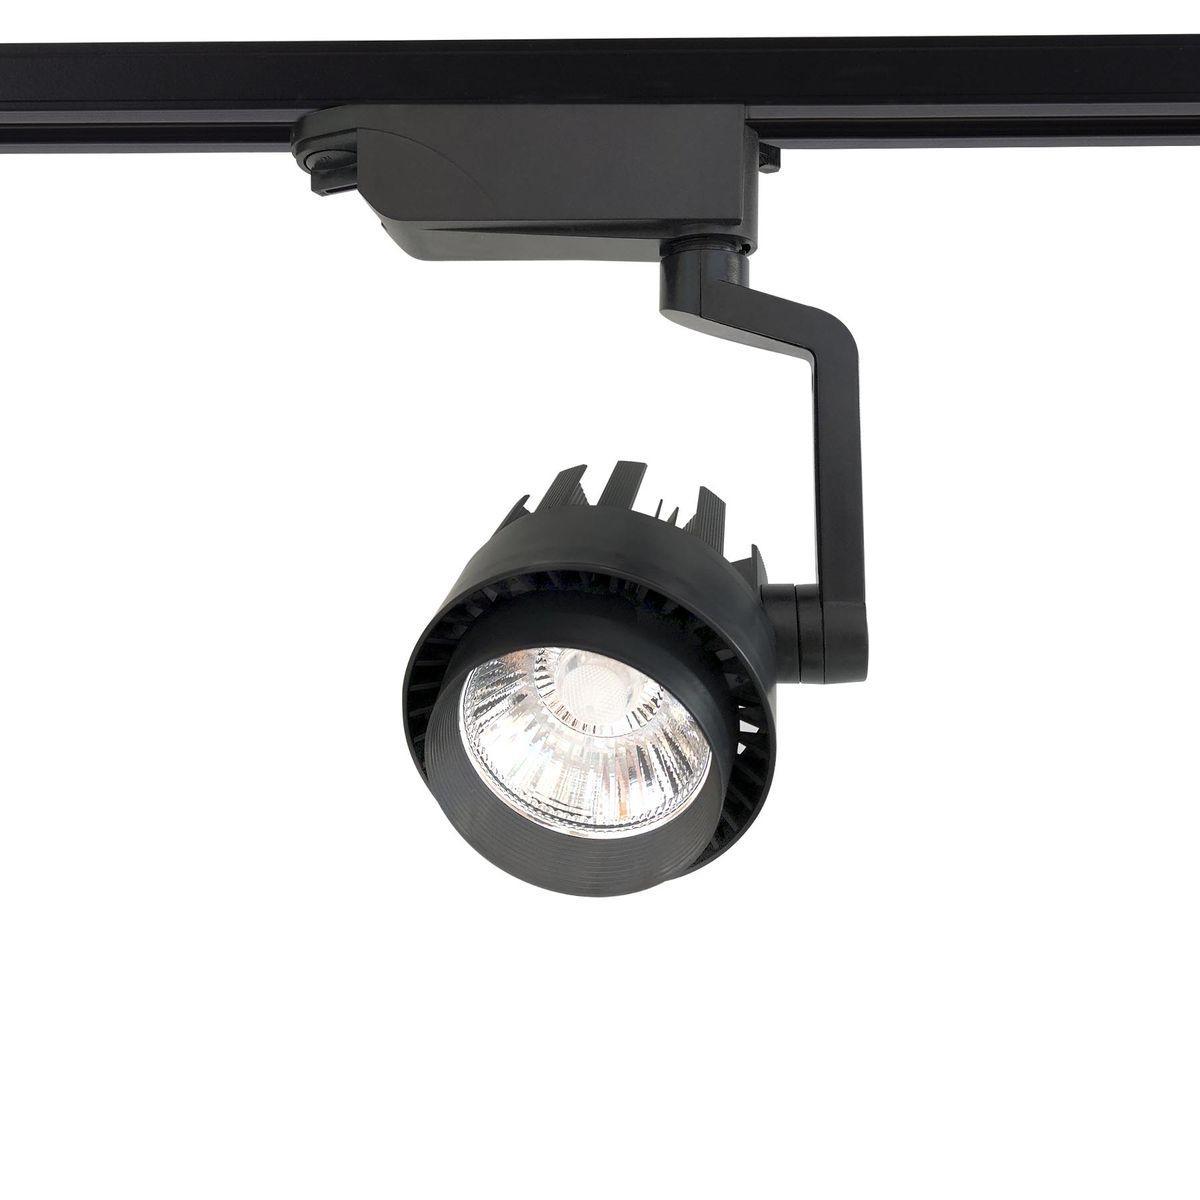 Трековый светодиодный светильник Ambrella light Track System GL6108 factory price head light auto lighting system 81150 06c70 81110 06c70 headlamp for toyot camry usa version 2015 2016 2017led